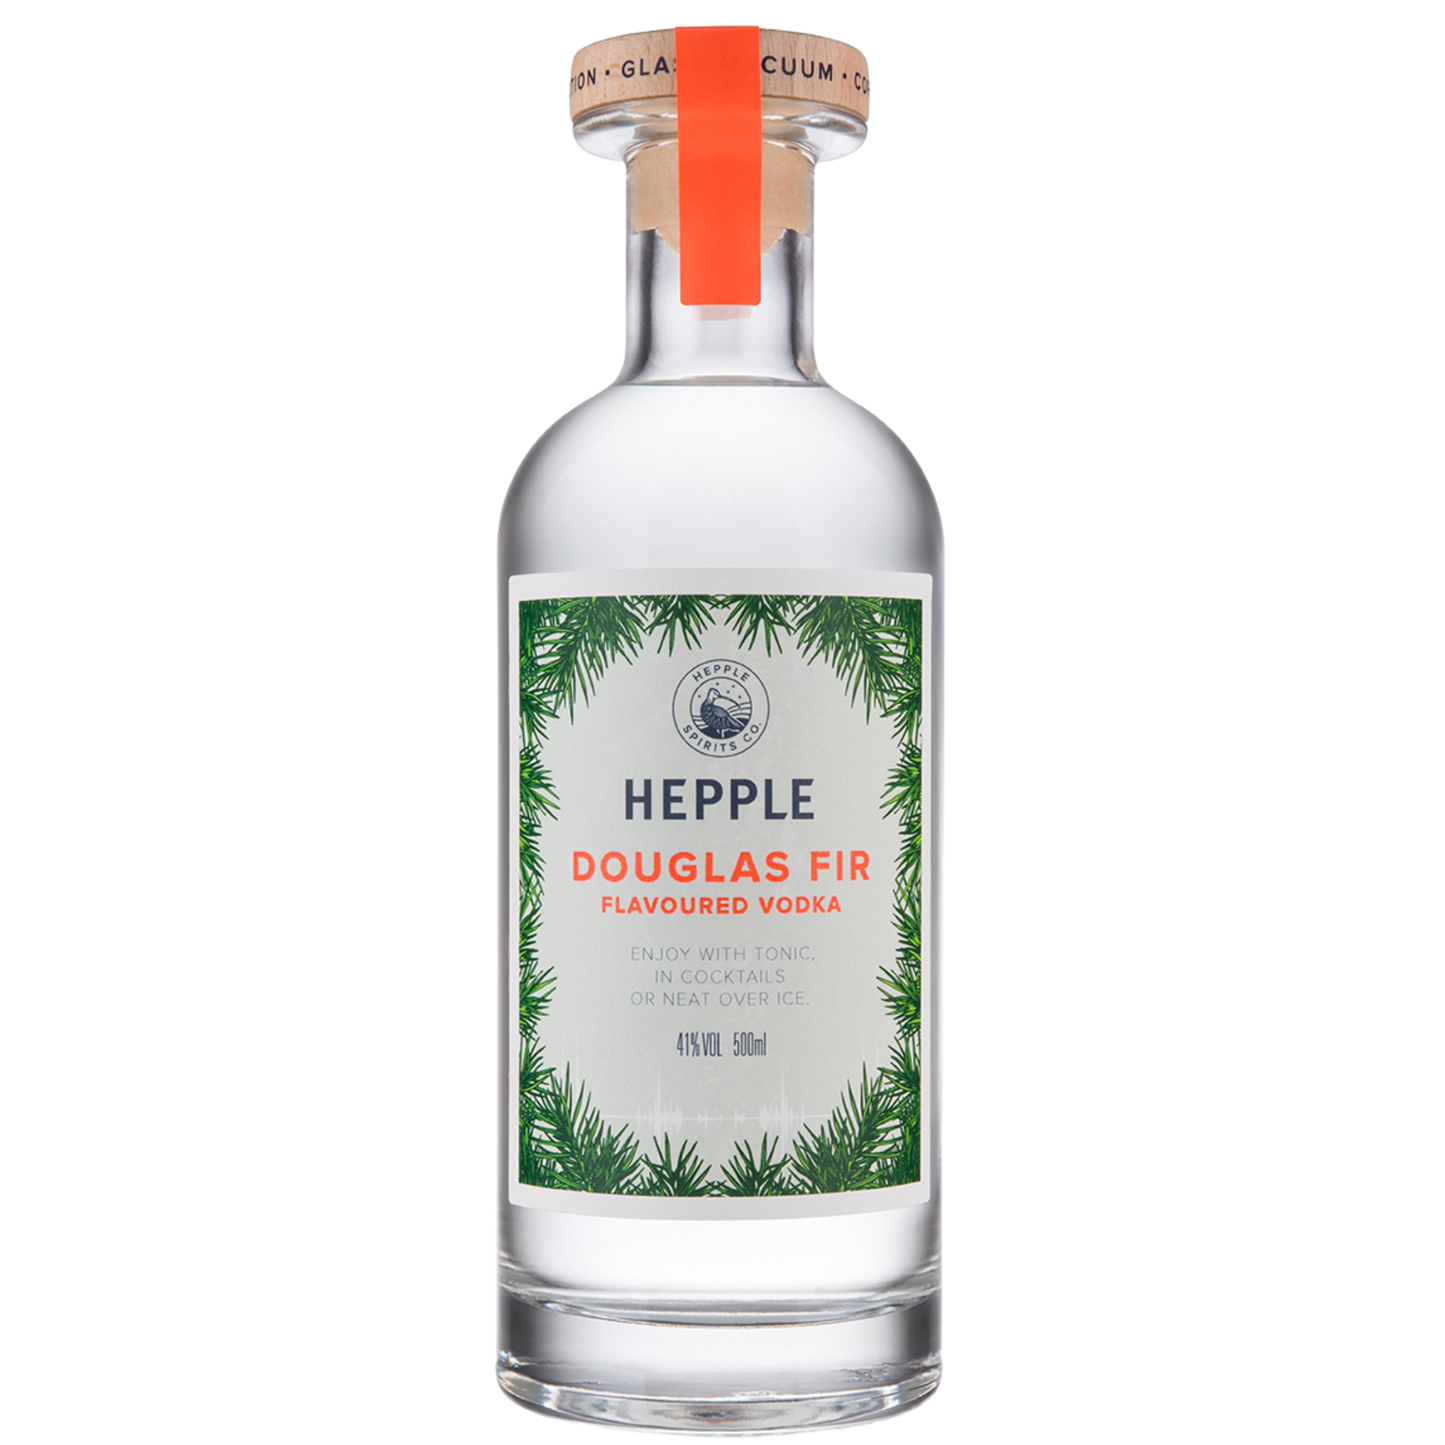 Hepple Douglas Fir Vodka